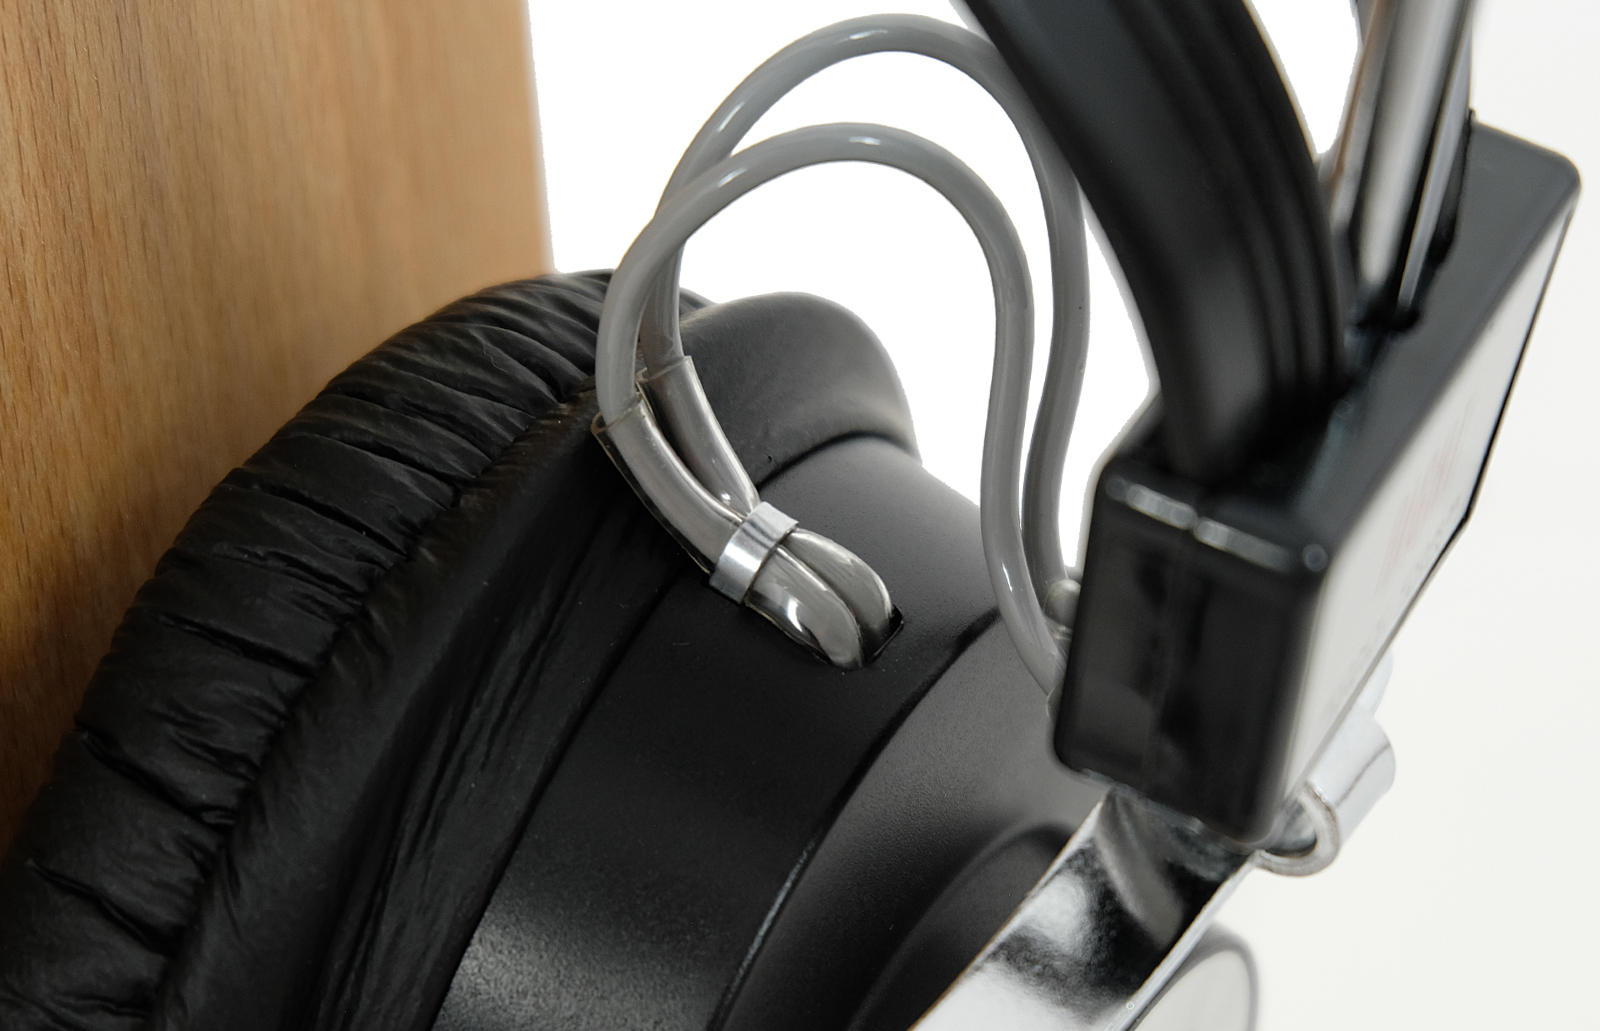 Sony DR-5A headphones